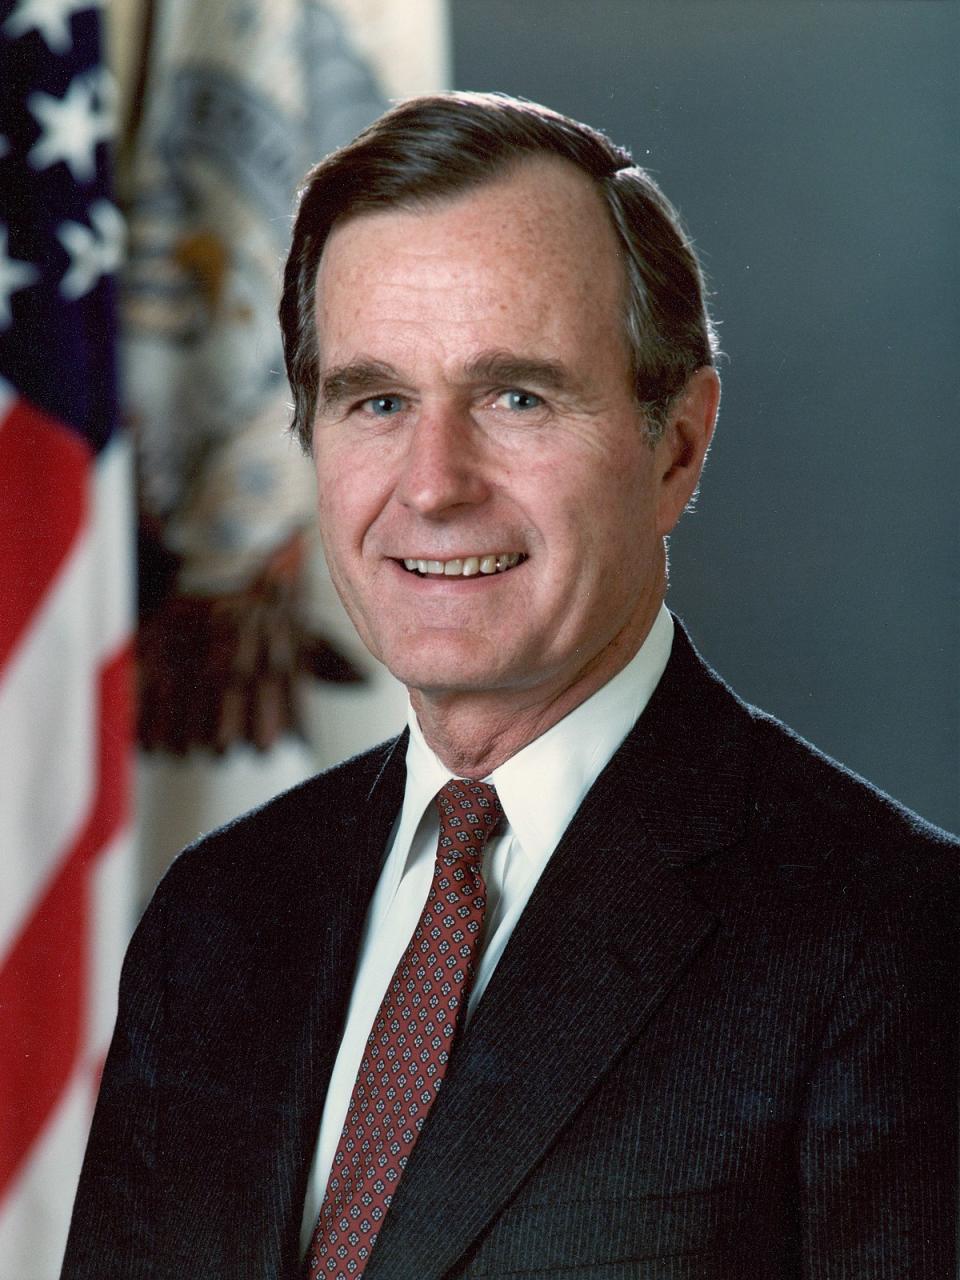 George H. W. Bush Presidential Portrait